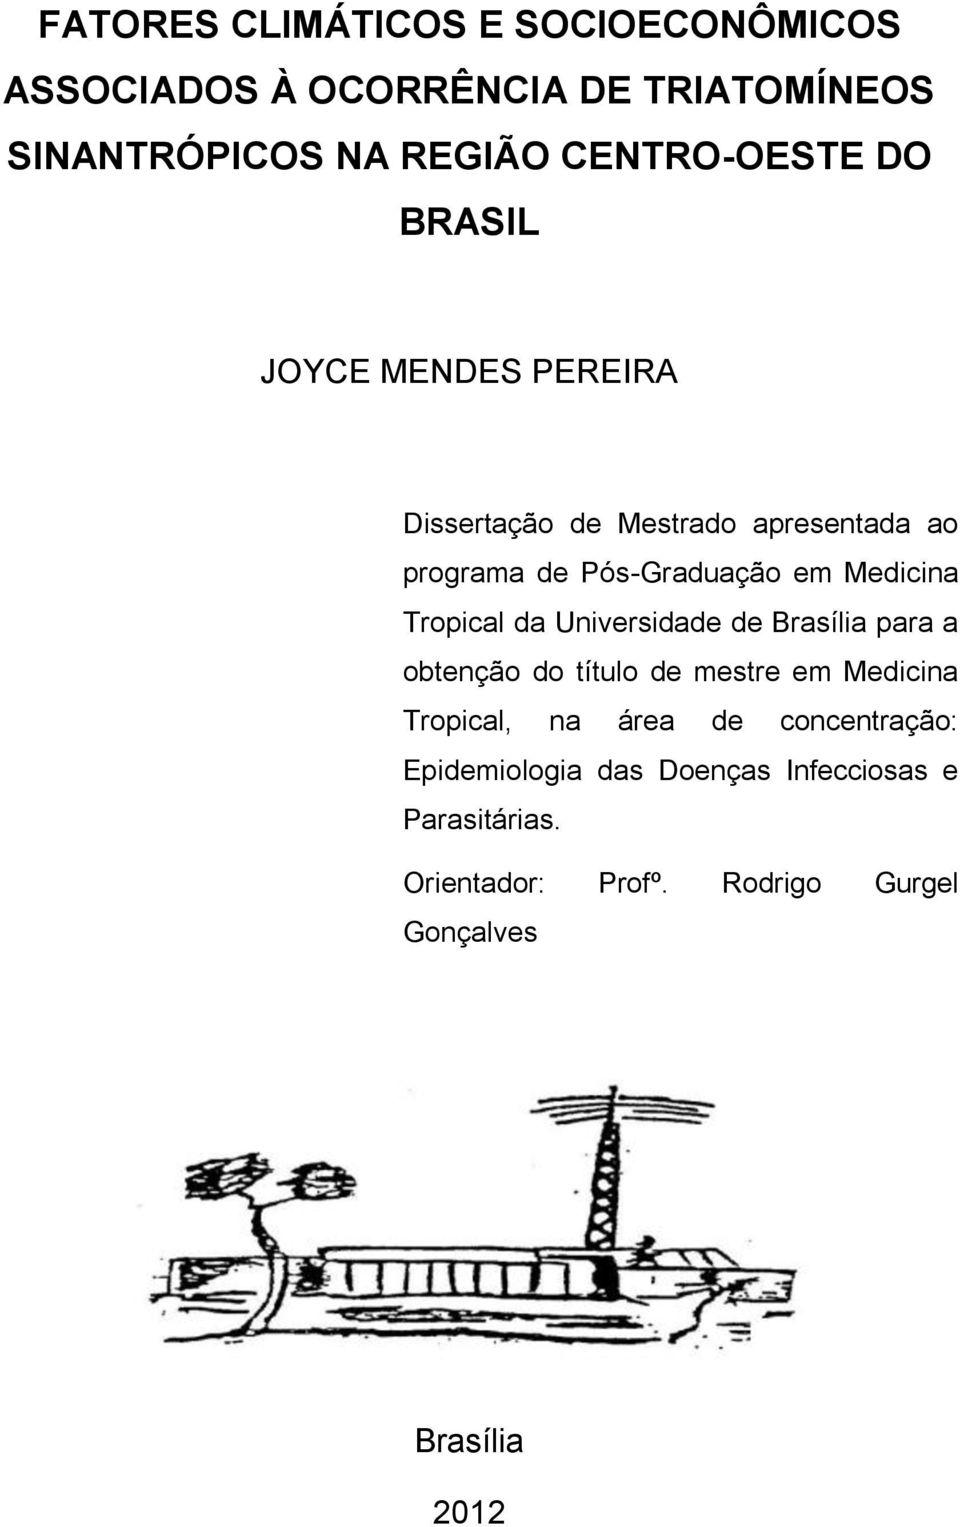 Tropical da Universidade de Brasília para a obtenção do título de mestre em Medicina Tropical, na área de